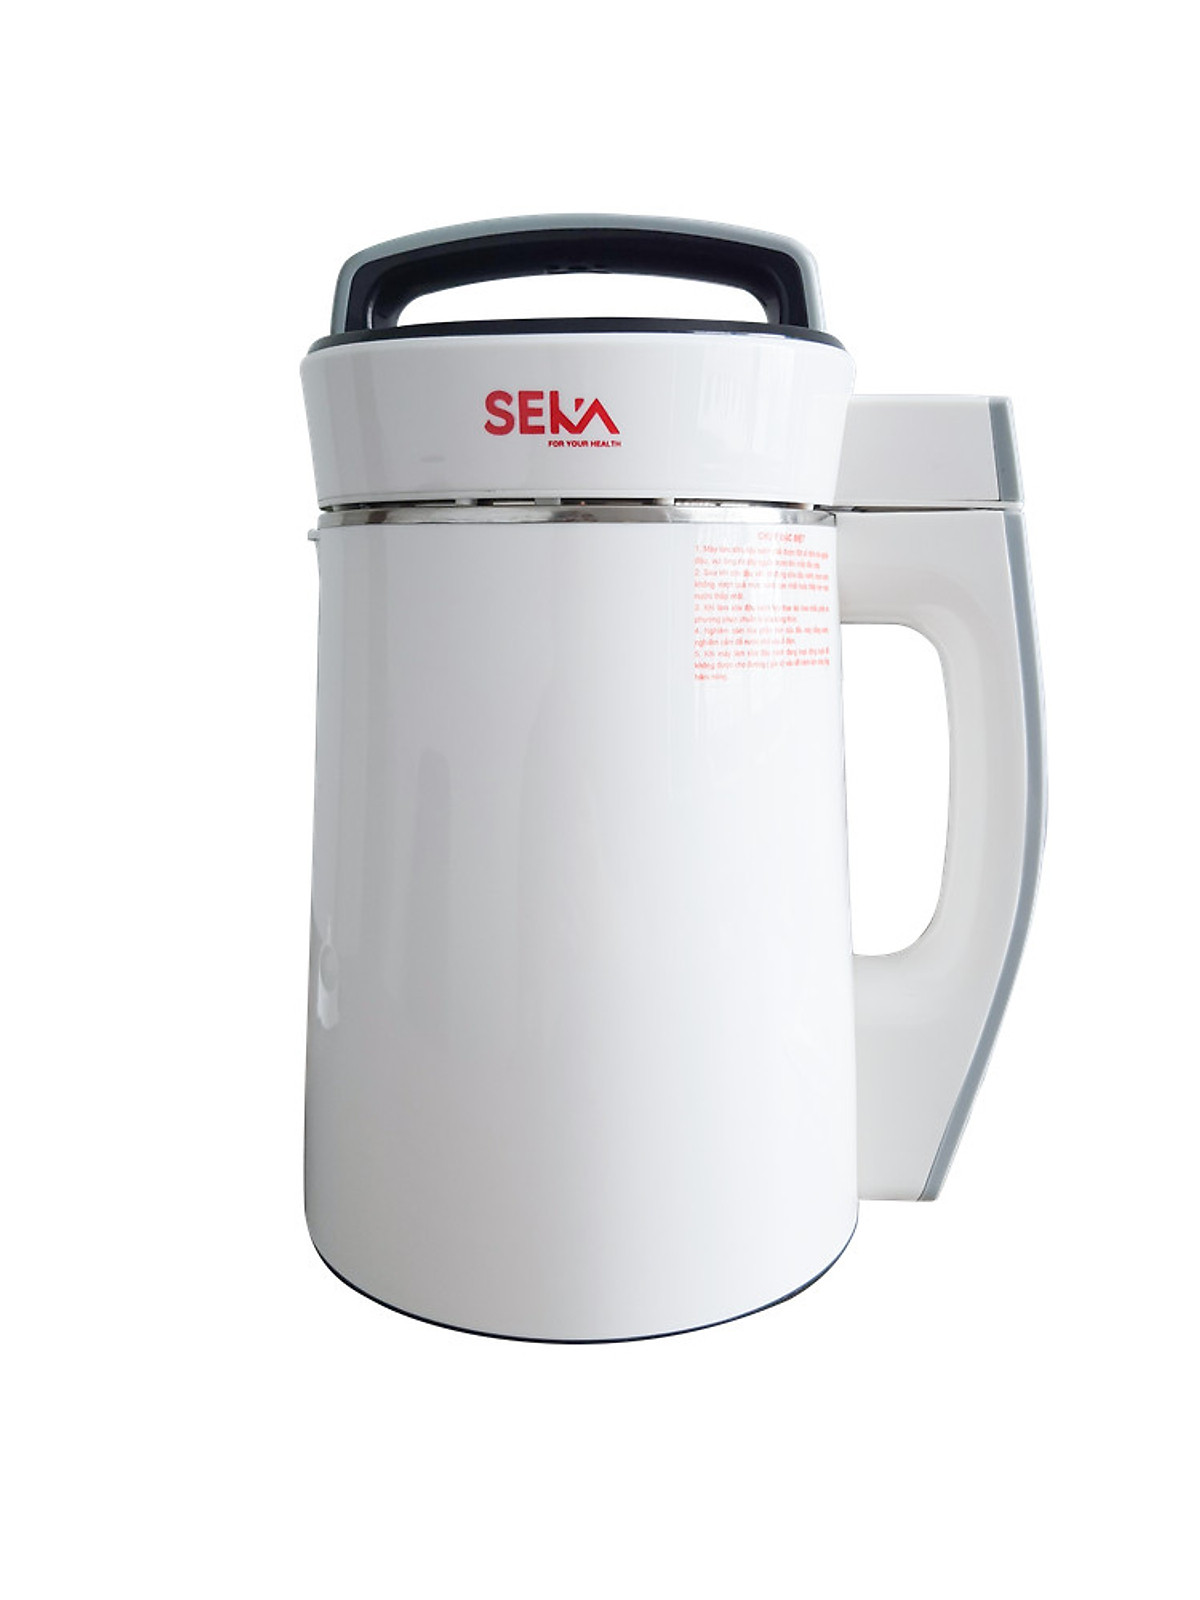 Chất liệu cối của máy làm sữa hạt SEKA là gì?
